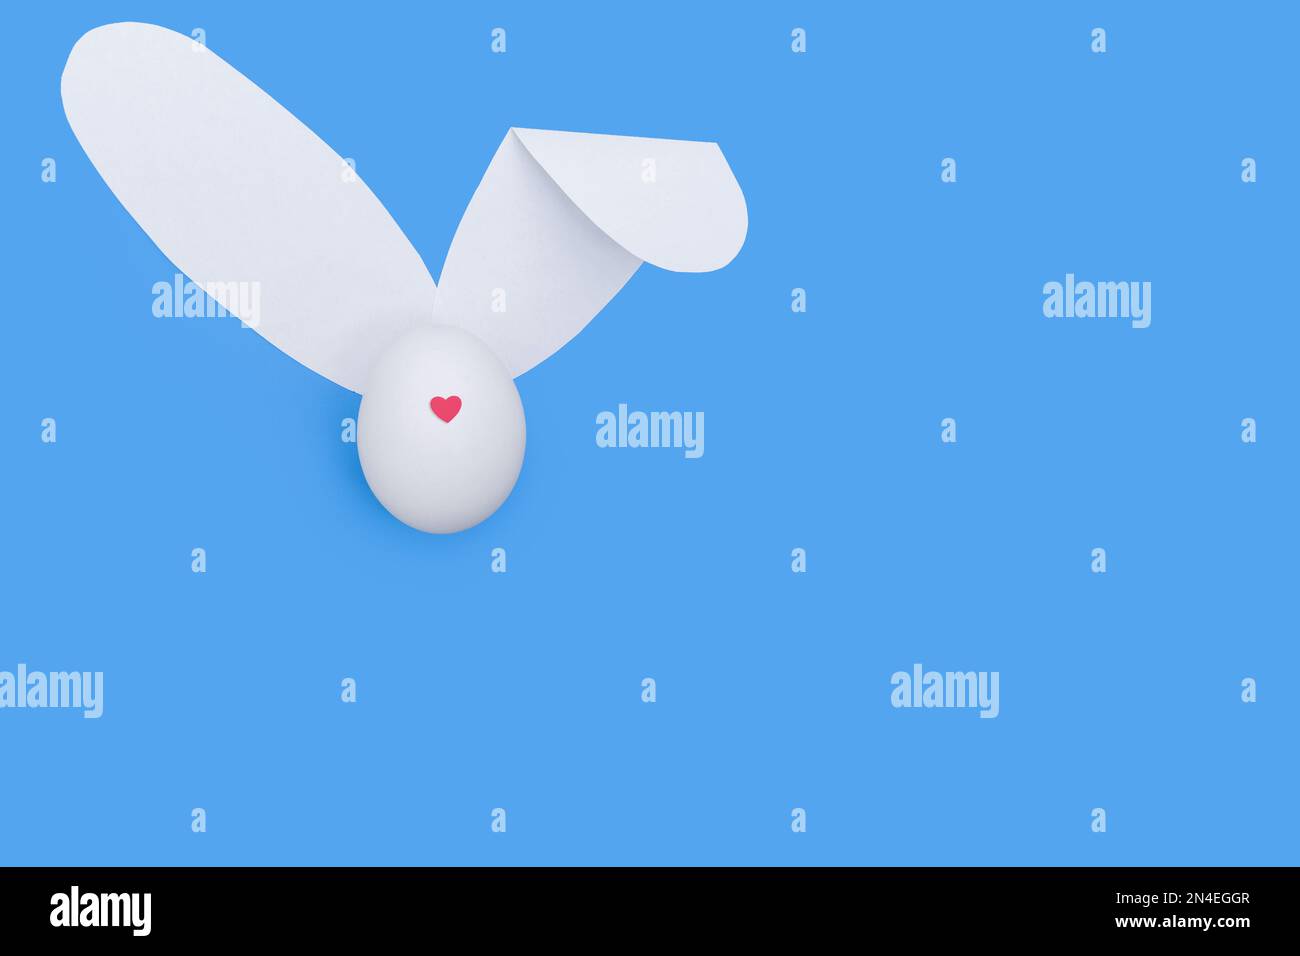 Une carte de vœux créative faite d'un œuf blanc avec un cœur rouge au lieu d'un nez et d'oreilles de papier blanc comme un lapin sur fond bleu ciel. Le minimum Banque D'Images